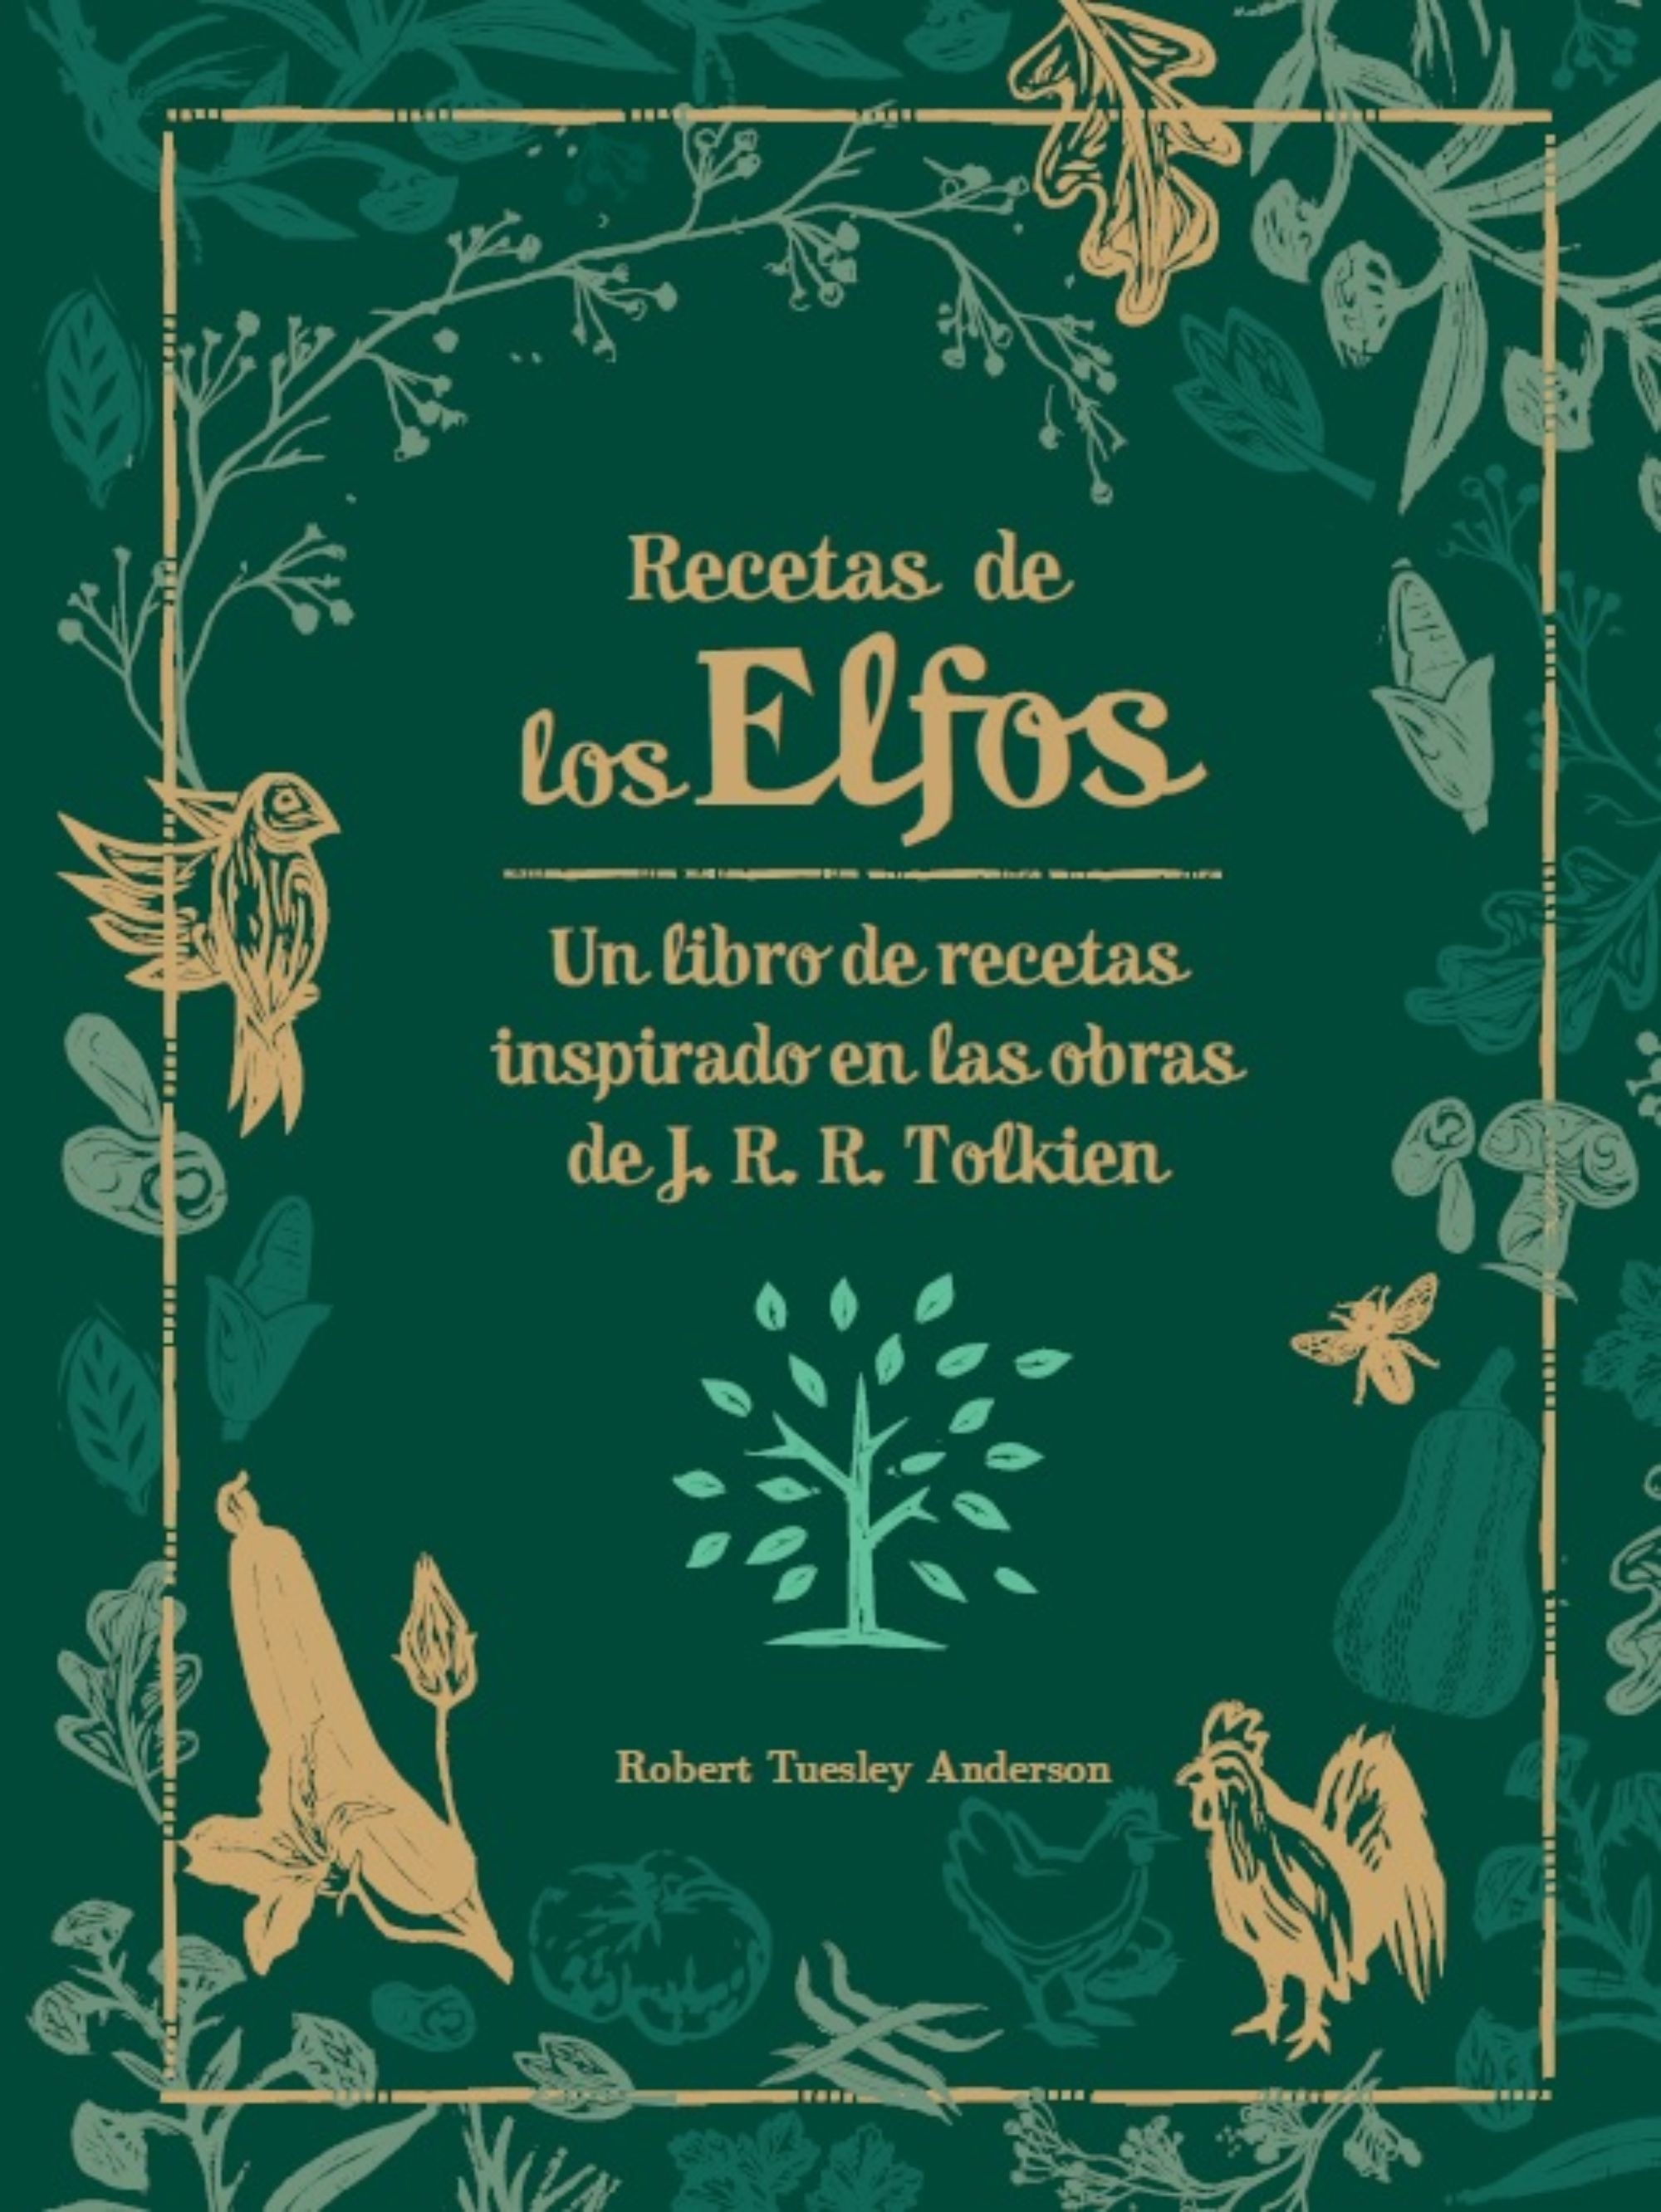 Recetas de los Elfos "Un libro de recetas inspirado en las obras de J.R.R. Tolkien"